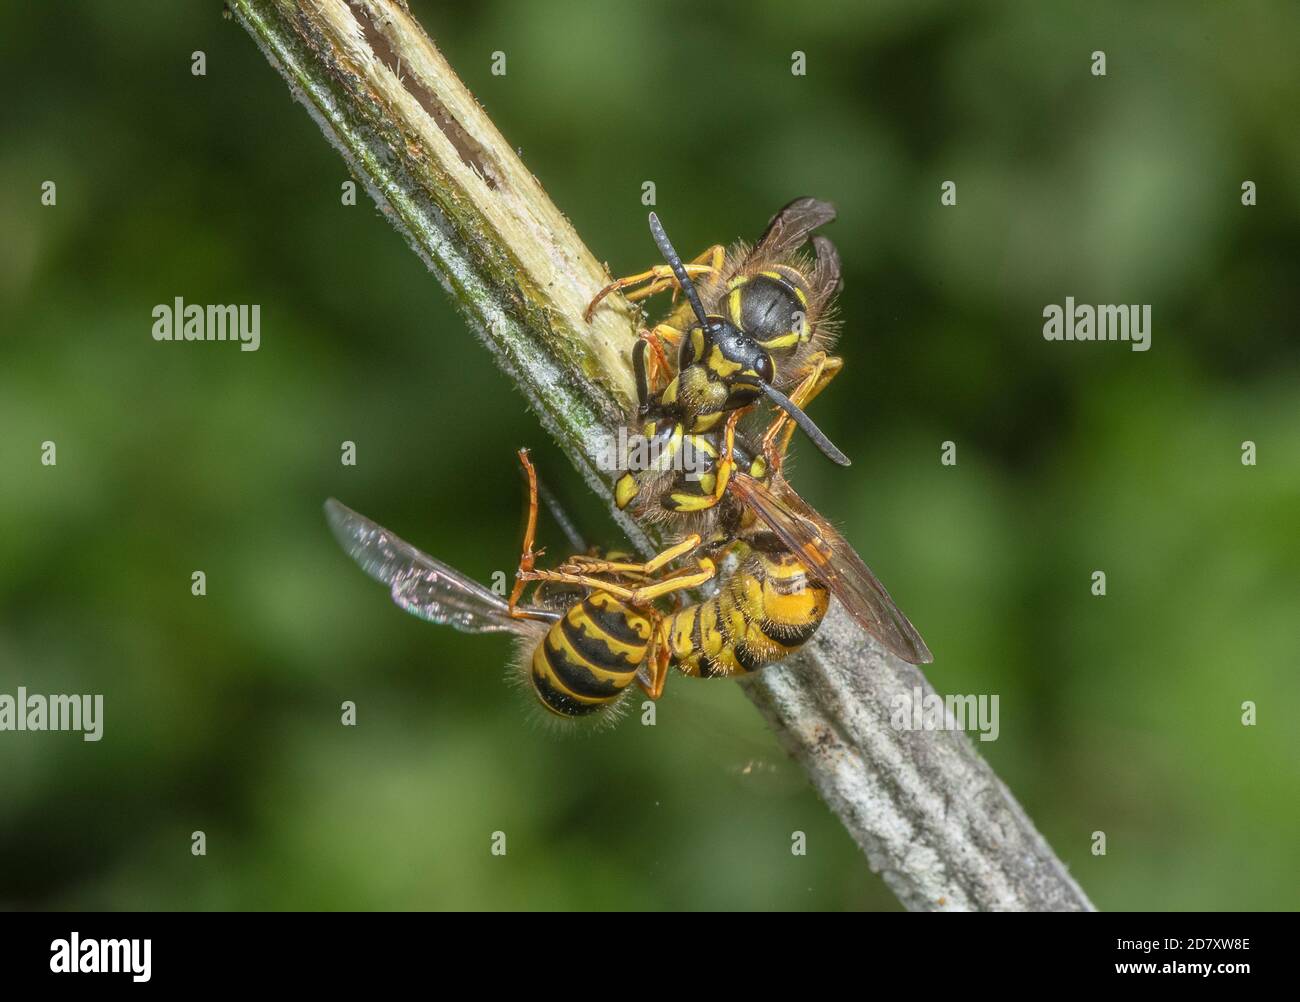 Gruppe von deutschen Wespen, Vespula germanica, die bei der Wunde, die zuckersaft ausläuft, auf Hogweed-Stamm wechselwirkend sind. Somerset Levels. Stockfoto